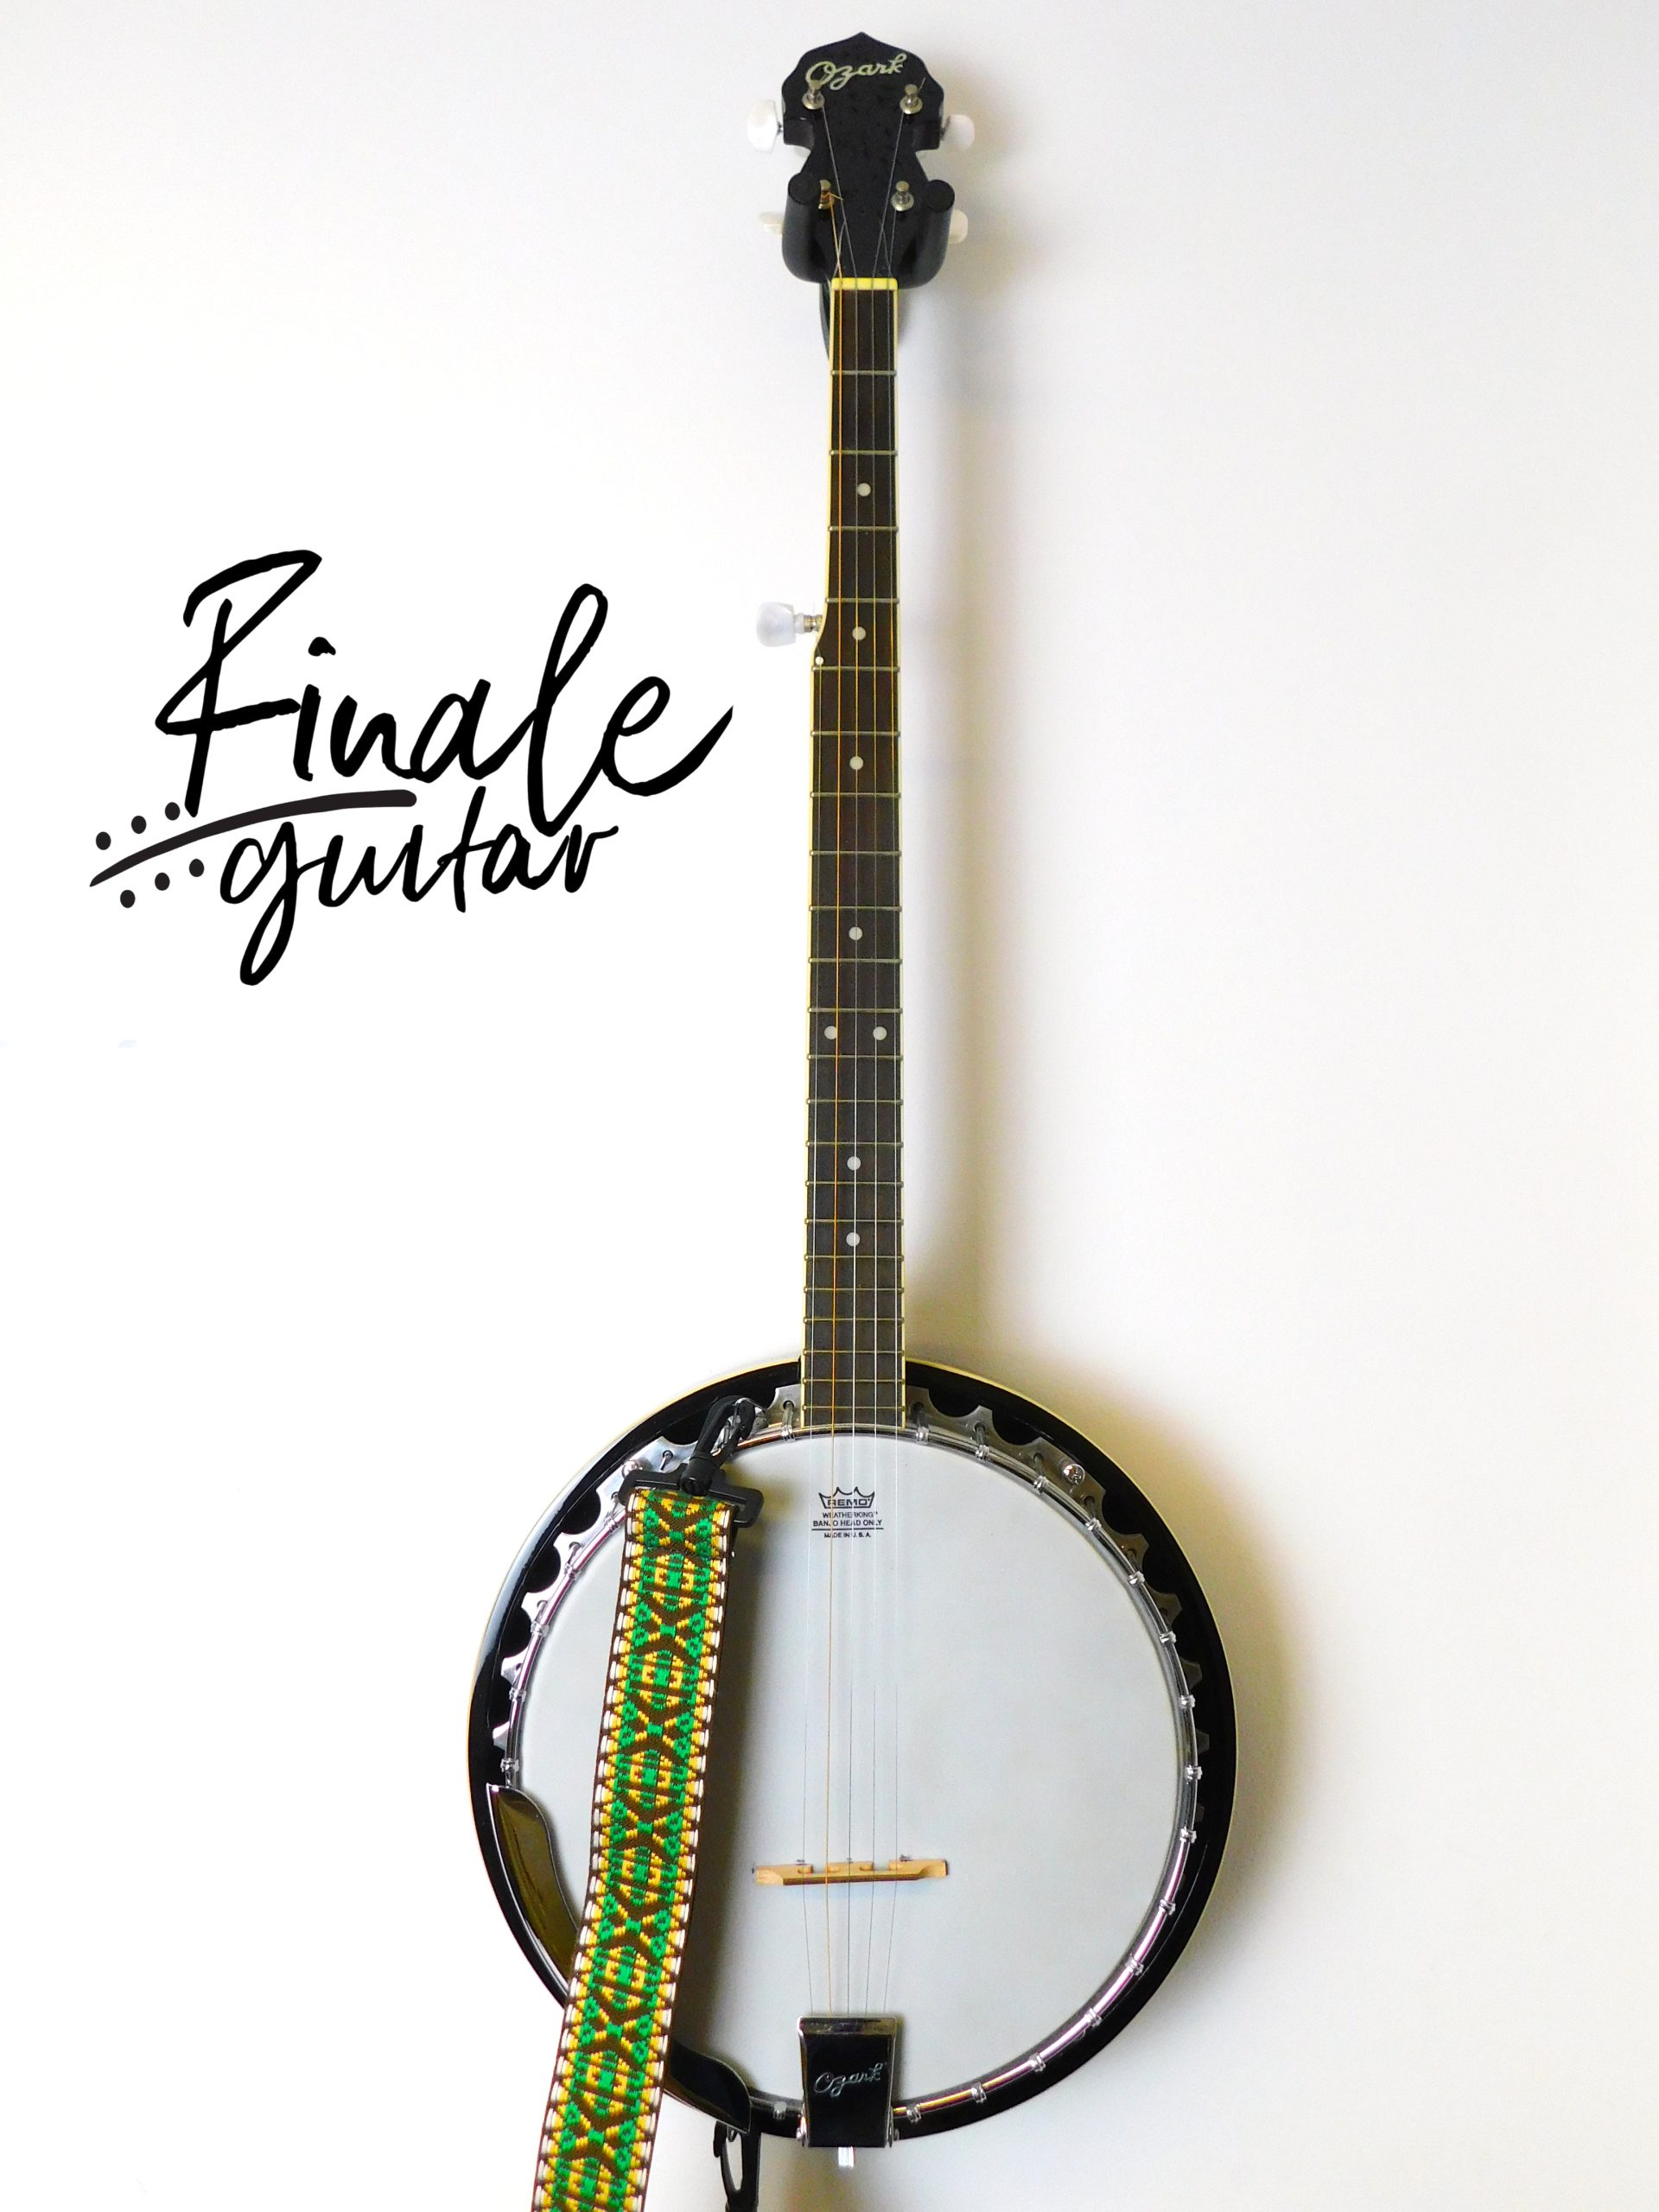 Ozark 5 string banjo for sale in our Sheffield guitar shop, Finale Guitar